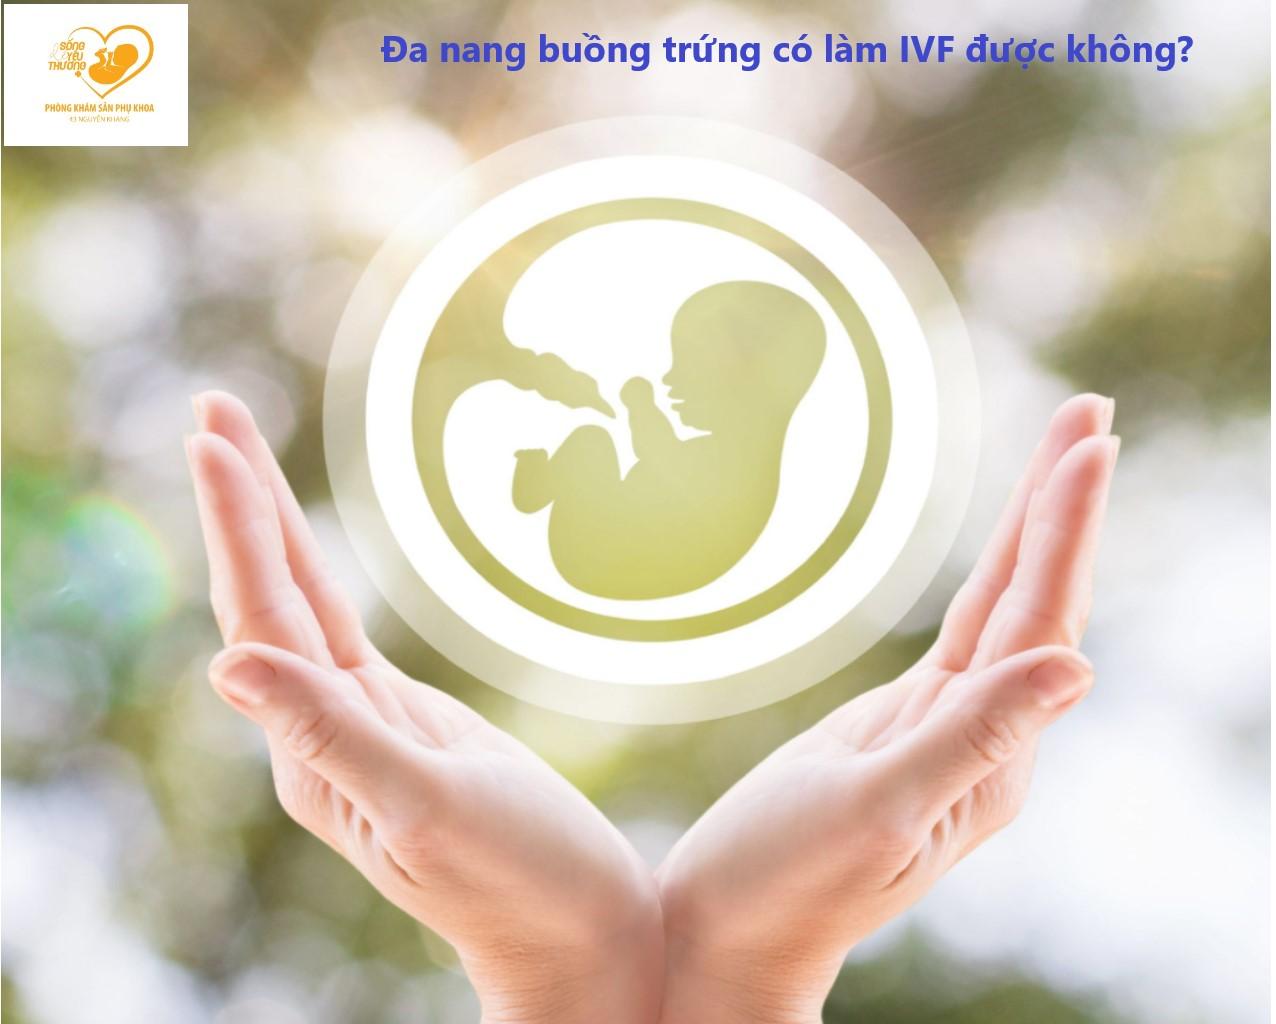 Phụ nữ bị đa nang buồng trứng có làm IVF được không?